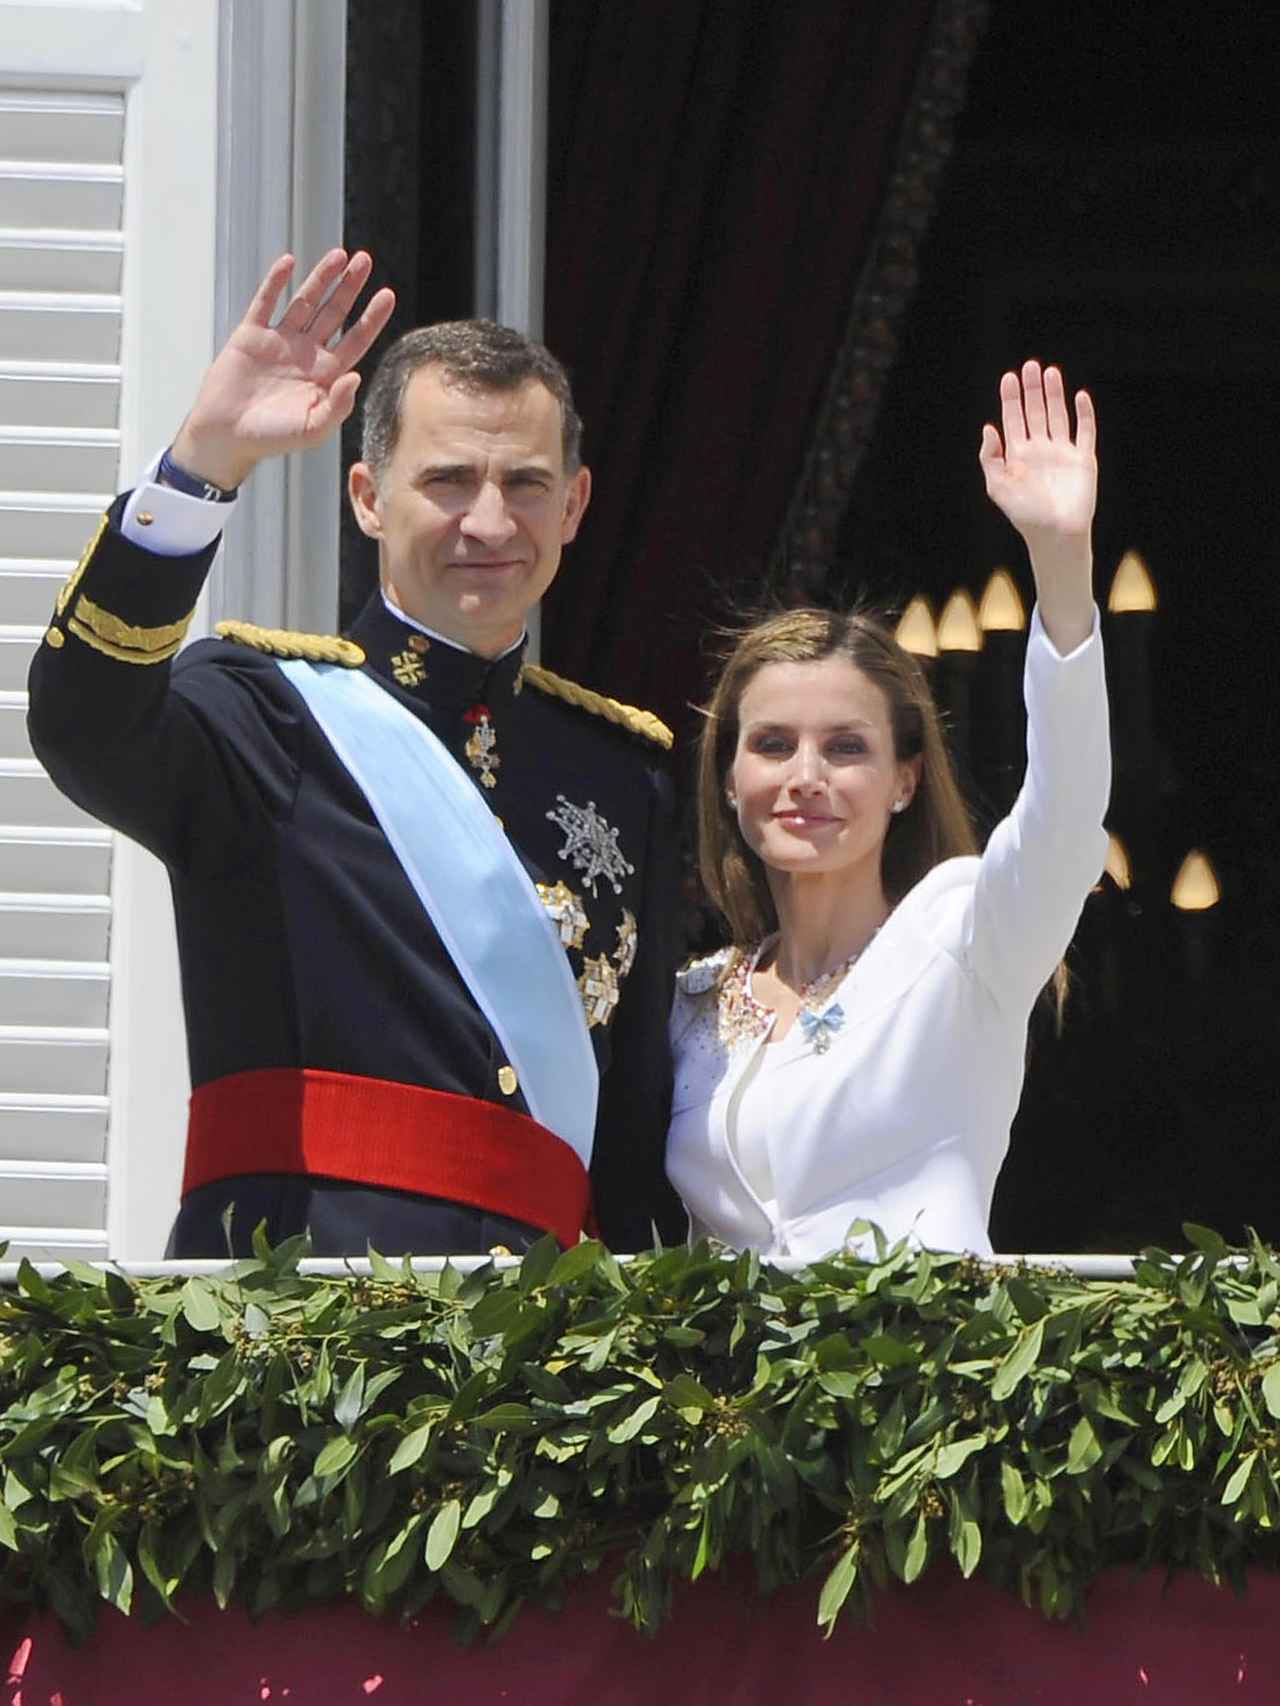 Imagen captada en junio de 2014, cuando Felipe VI fue proclamado Rey de España.